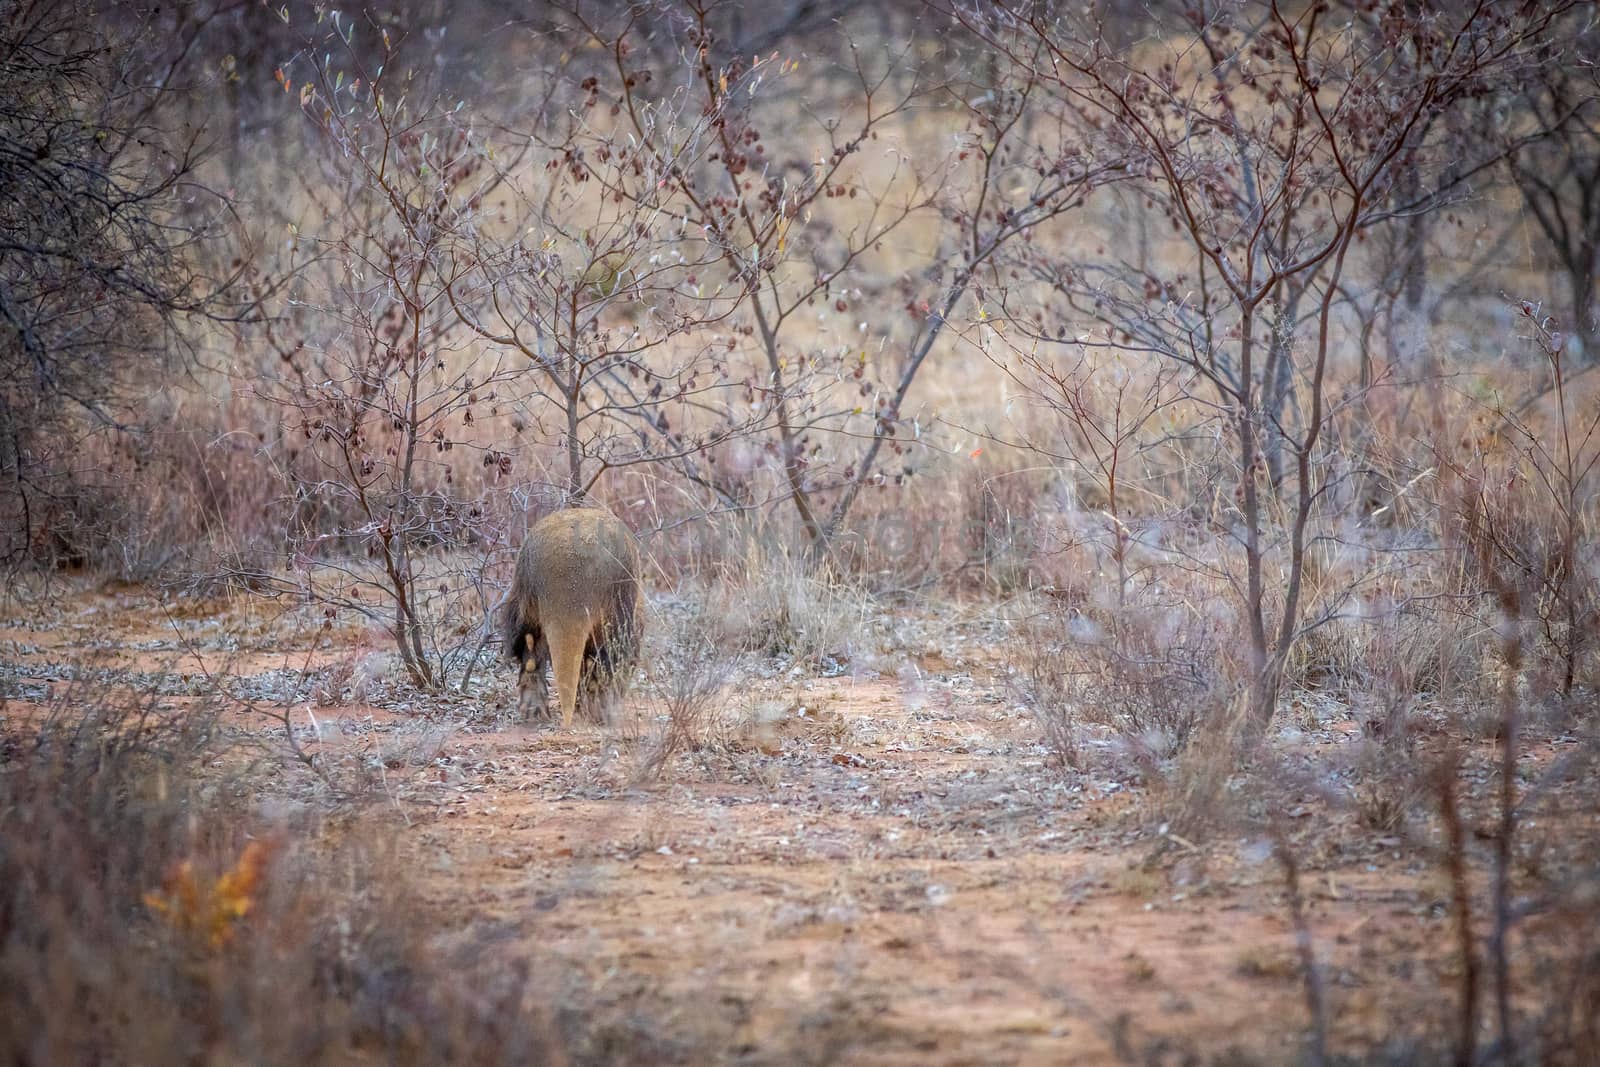 Aardvark walking away in the bush. by Simoneemanphotography